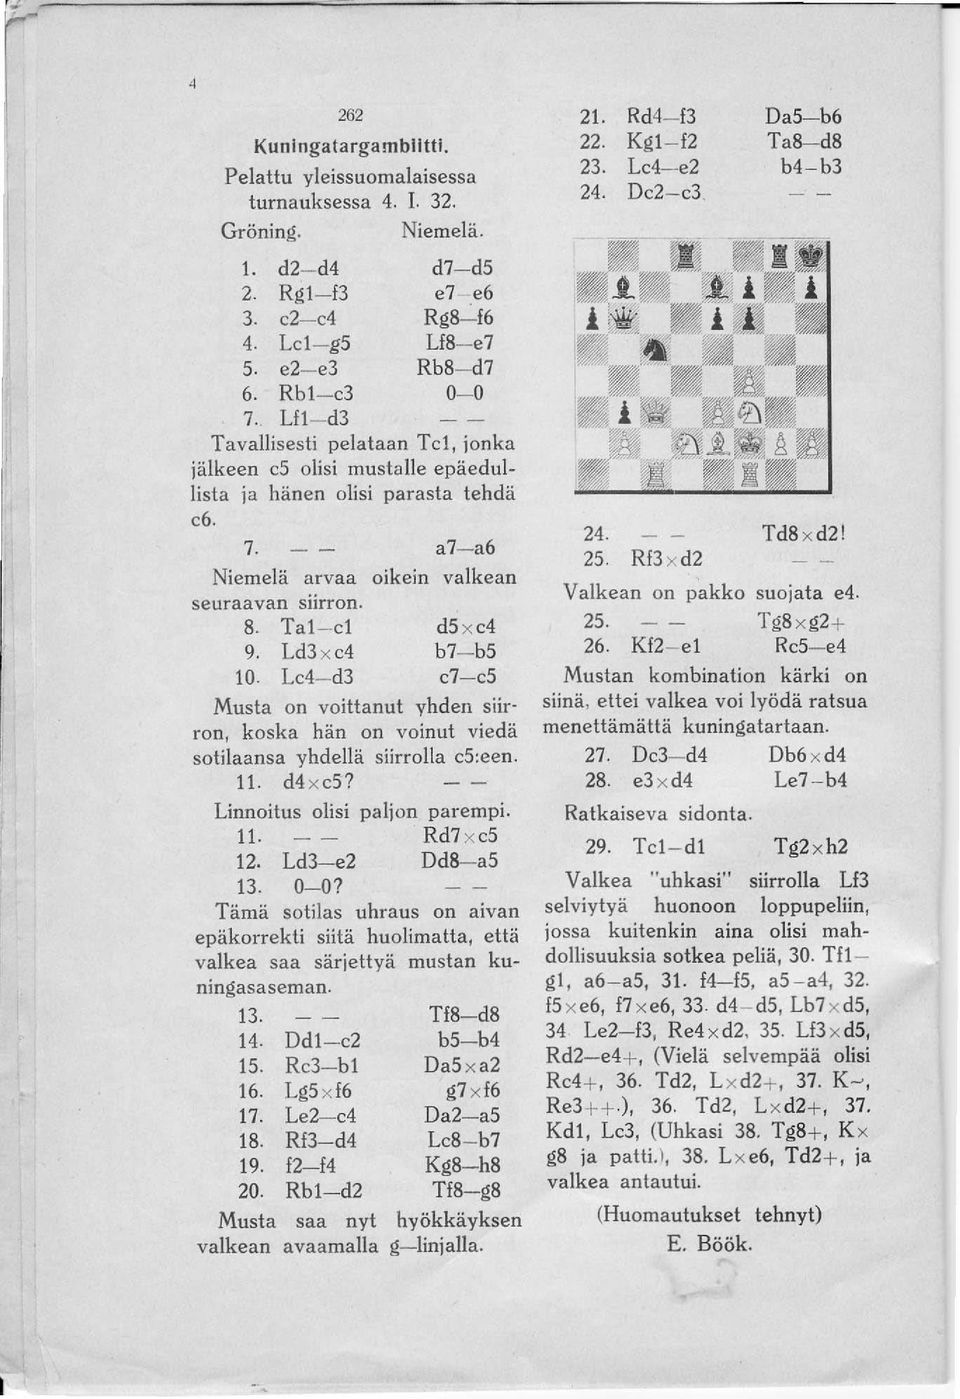 Ta1 - el 9. Ld3 x c4 10. Lc4- d3 d5 x c4 b7- b5 c7- c5 Musta on voittanut yhden siir' ron, koska hän on voinut viedä sotilaansa yhdellä siirrolla c5:een. 11. d4 x c5? Linnoitus olisi paljon parempi.